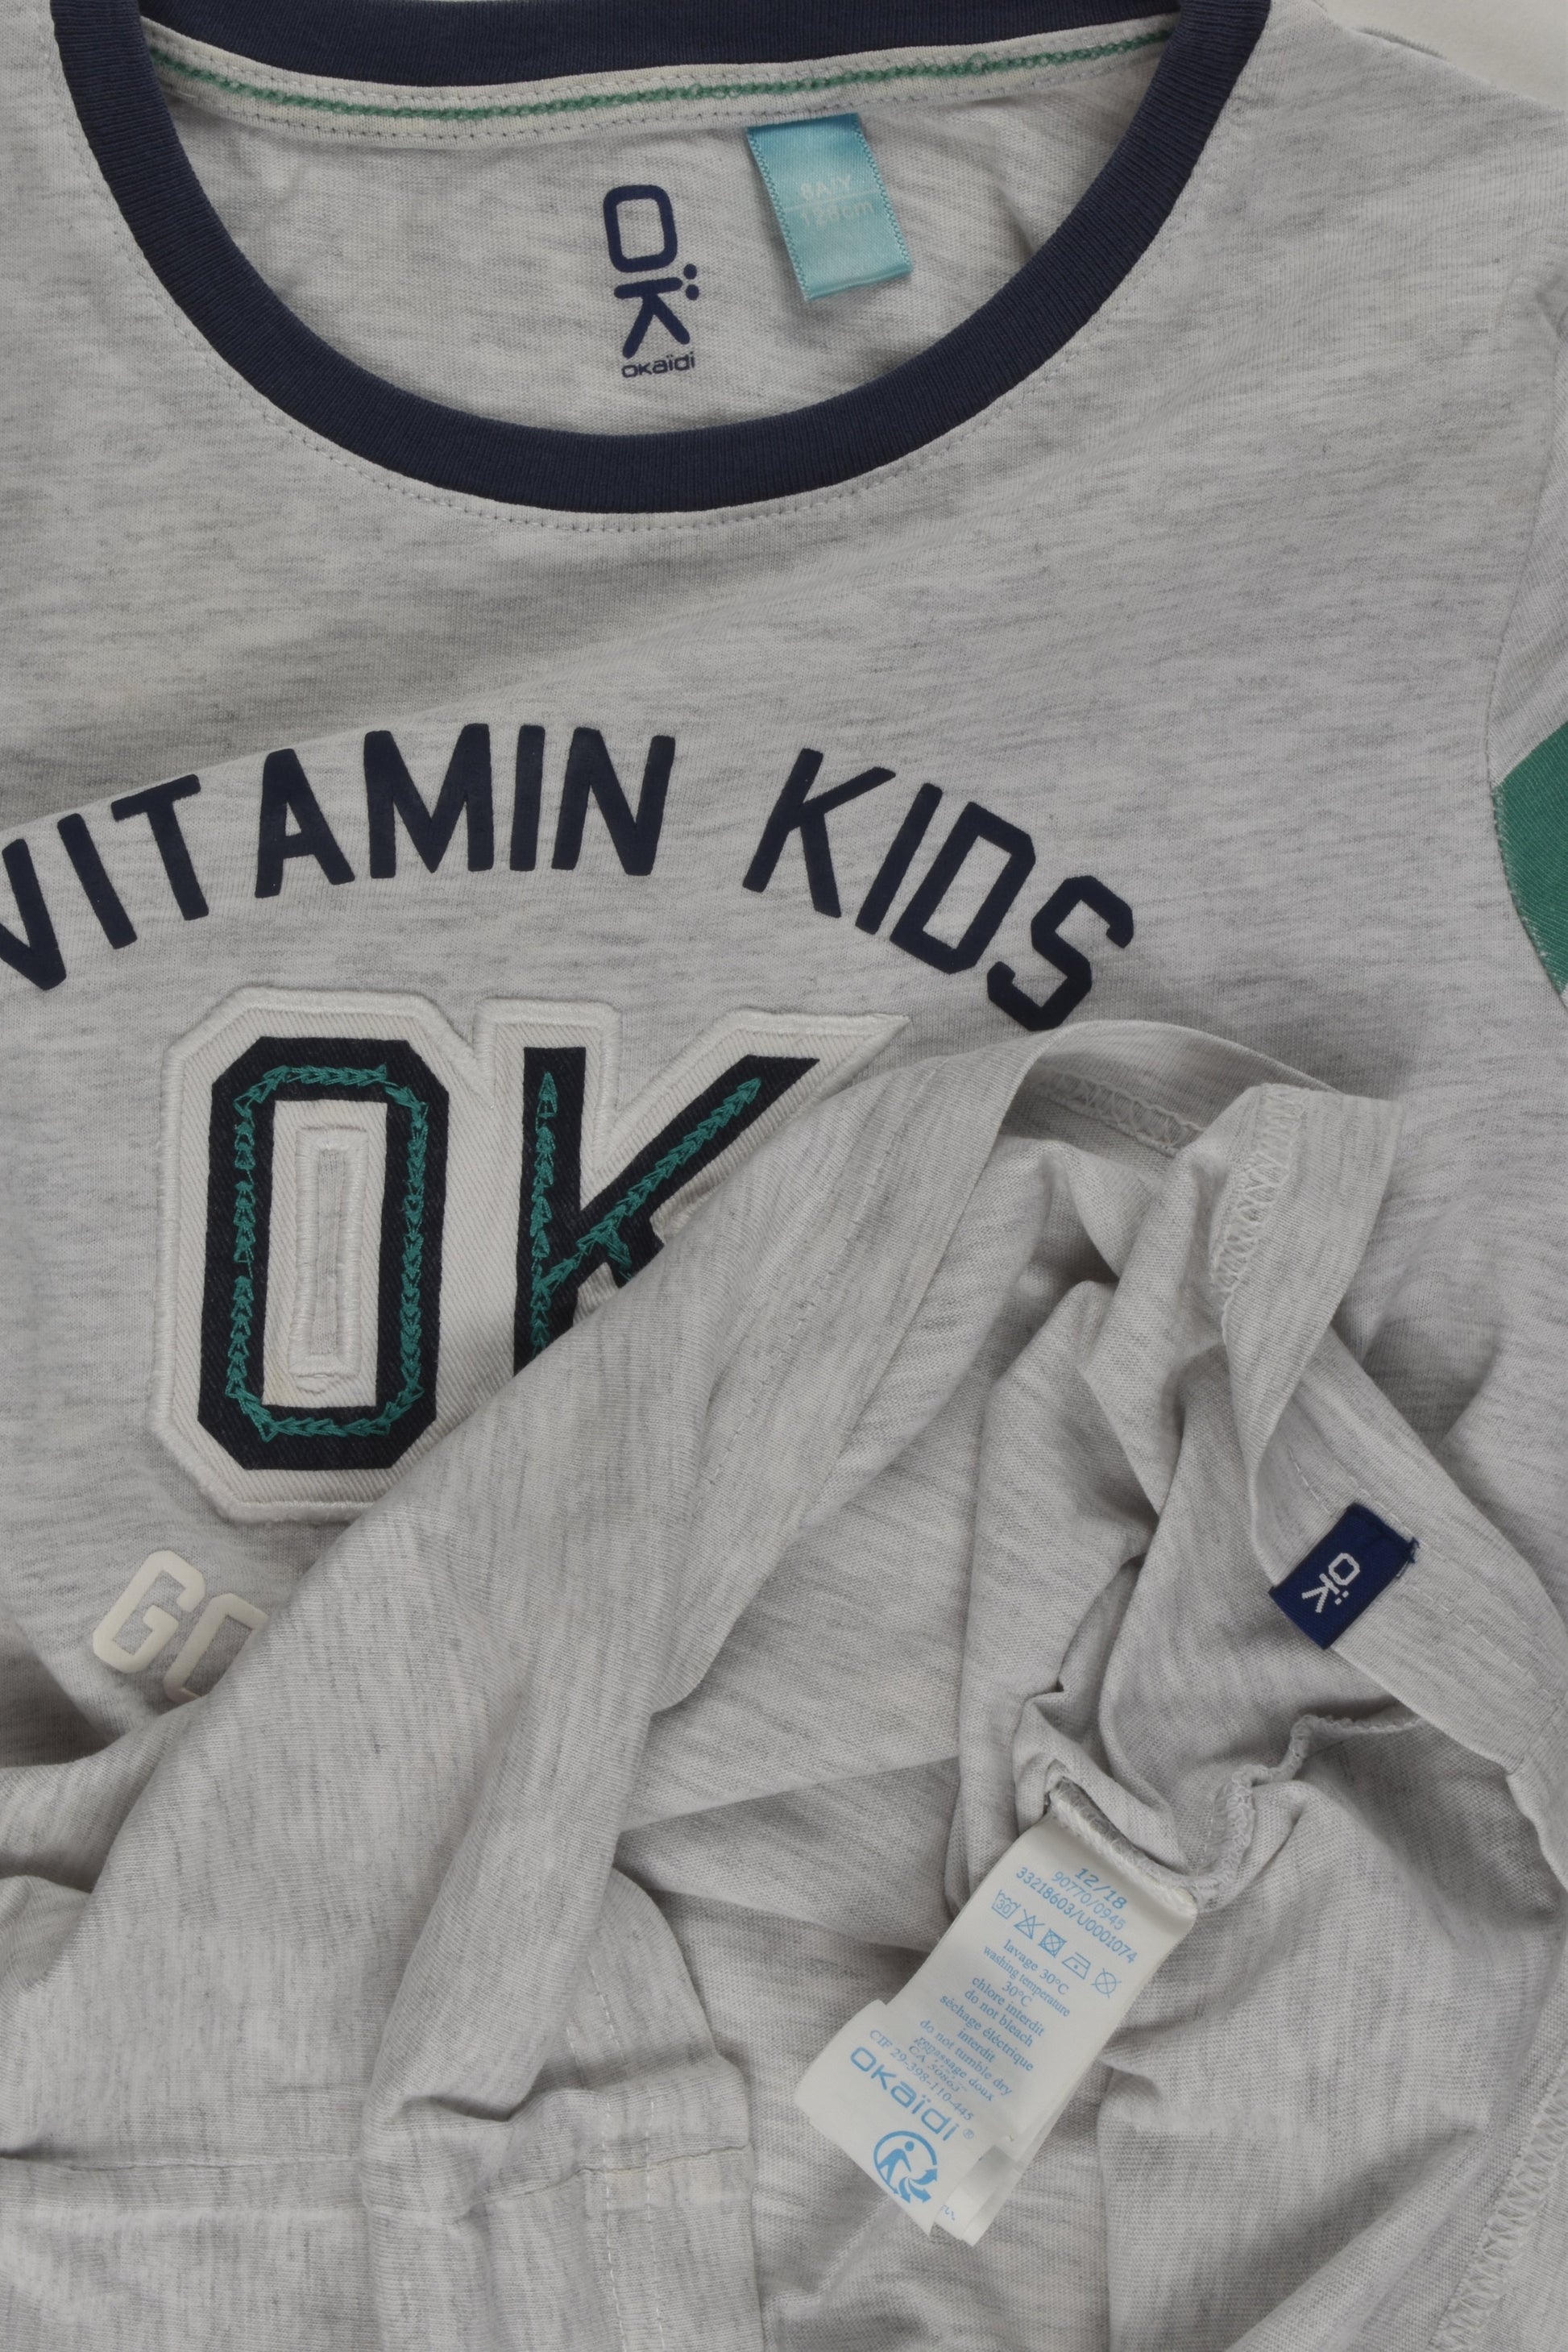 Okaïdi Size 8 (128 cm) 'Vitamin Kids' T-shirt